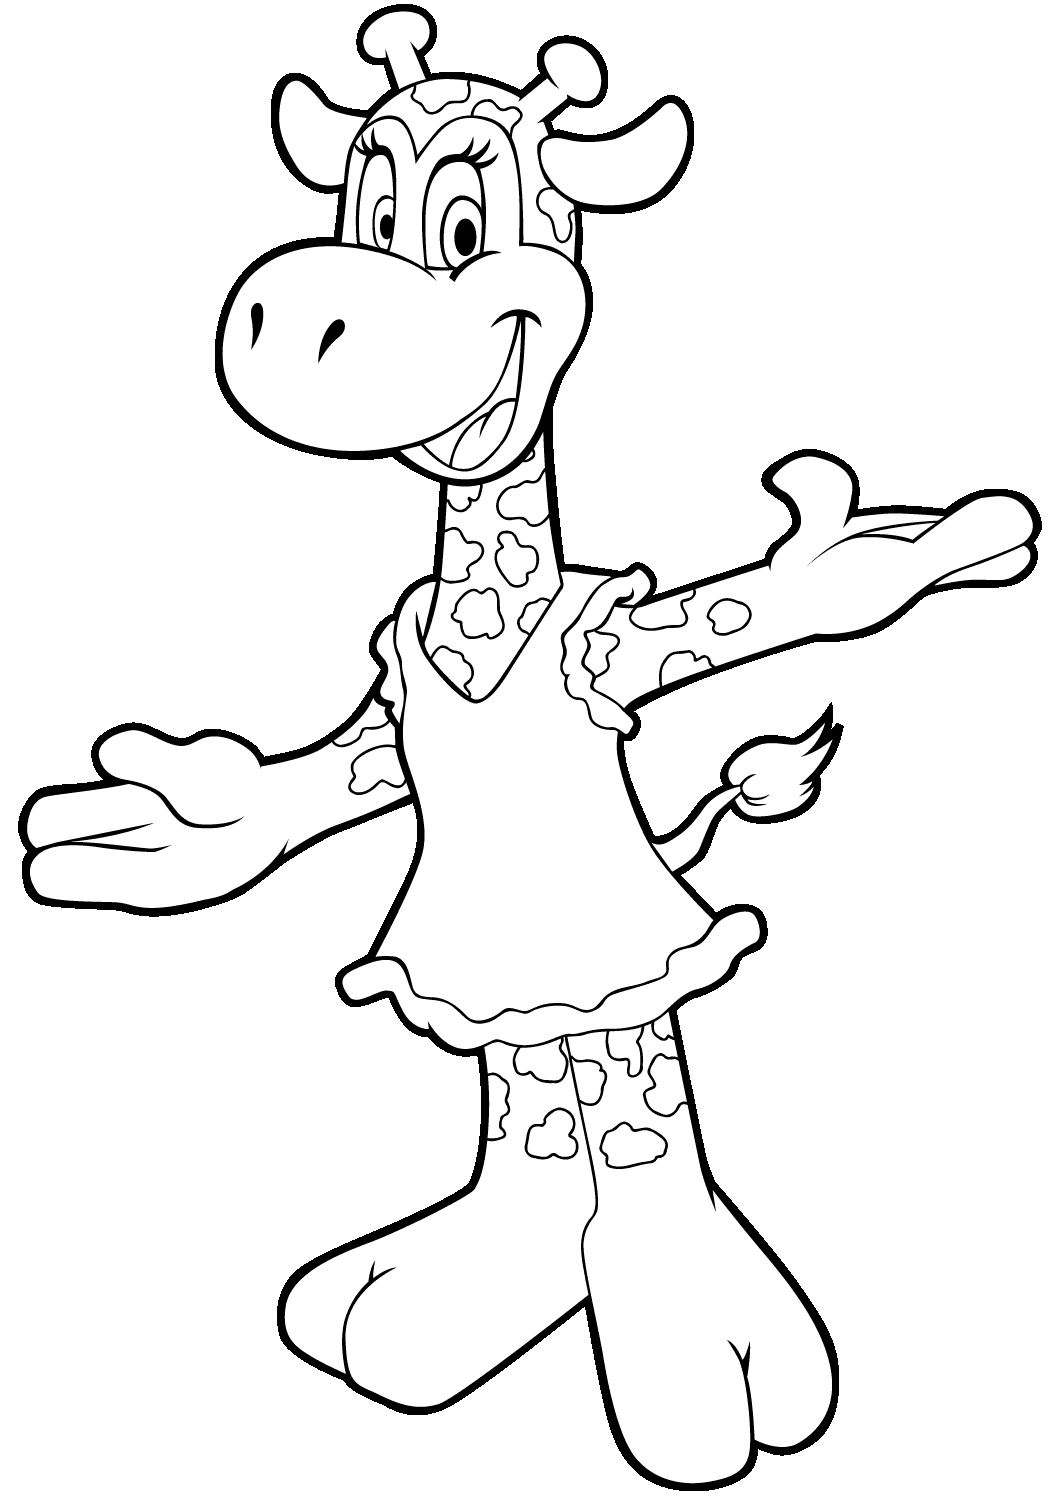 Fun Cartoon Giraffe Coloring Page